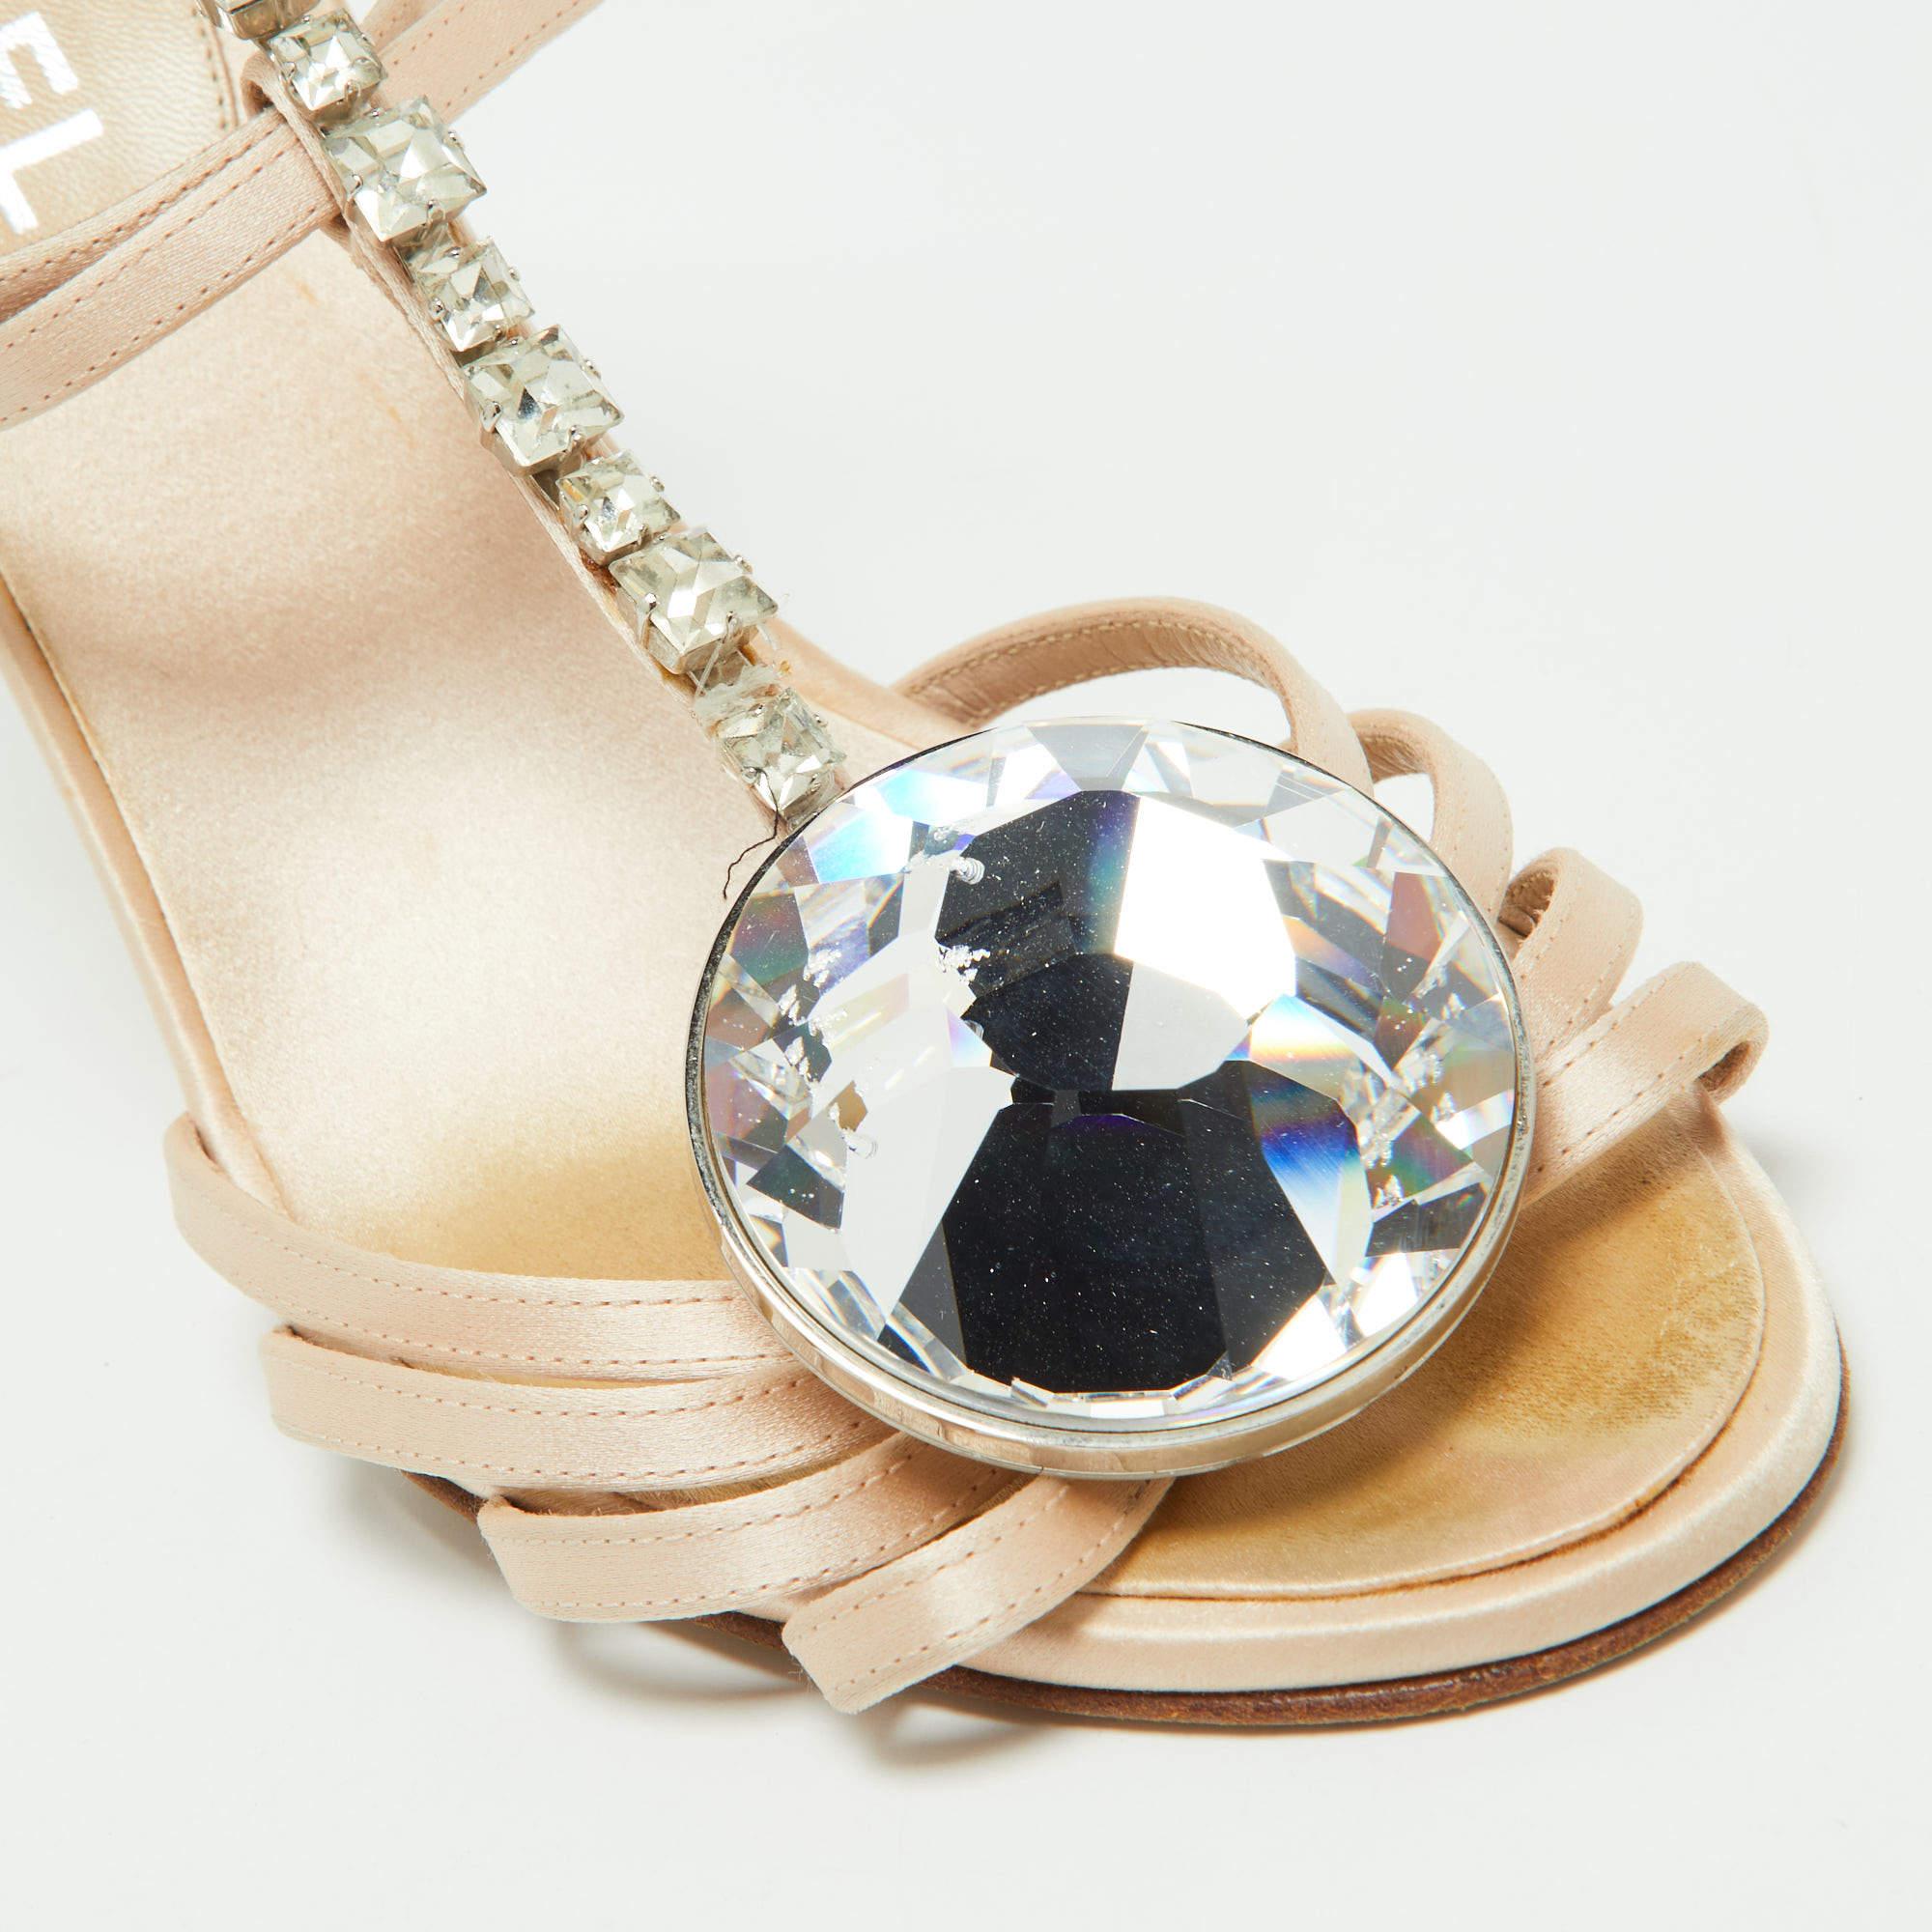 Chanel Beige Satin Crystal Embellished Slingback Sandals Size 39.5 For Sale 4